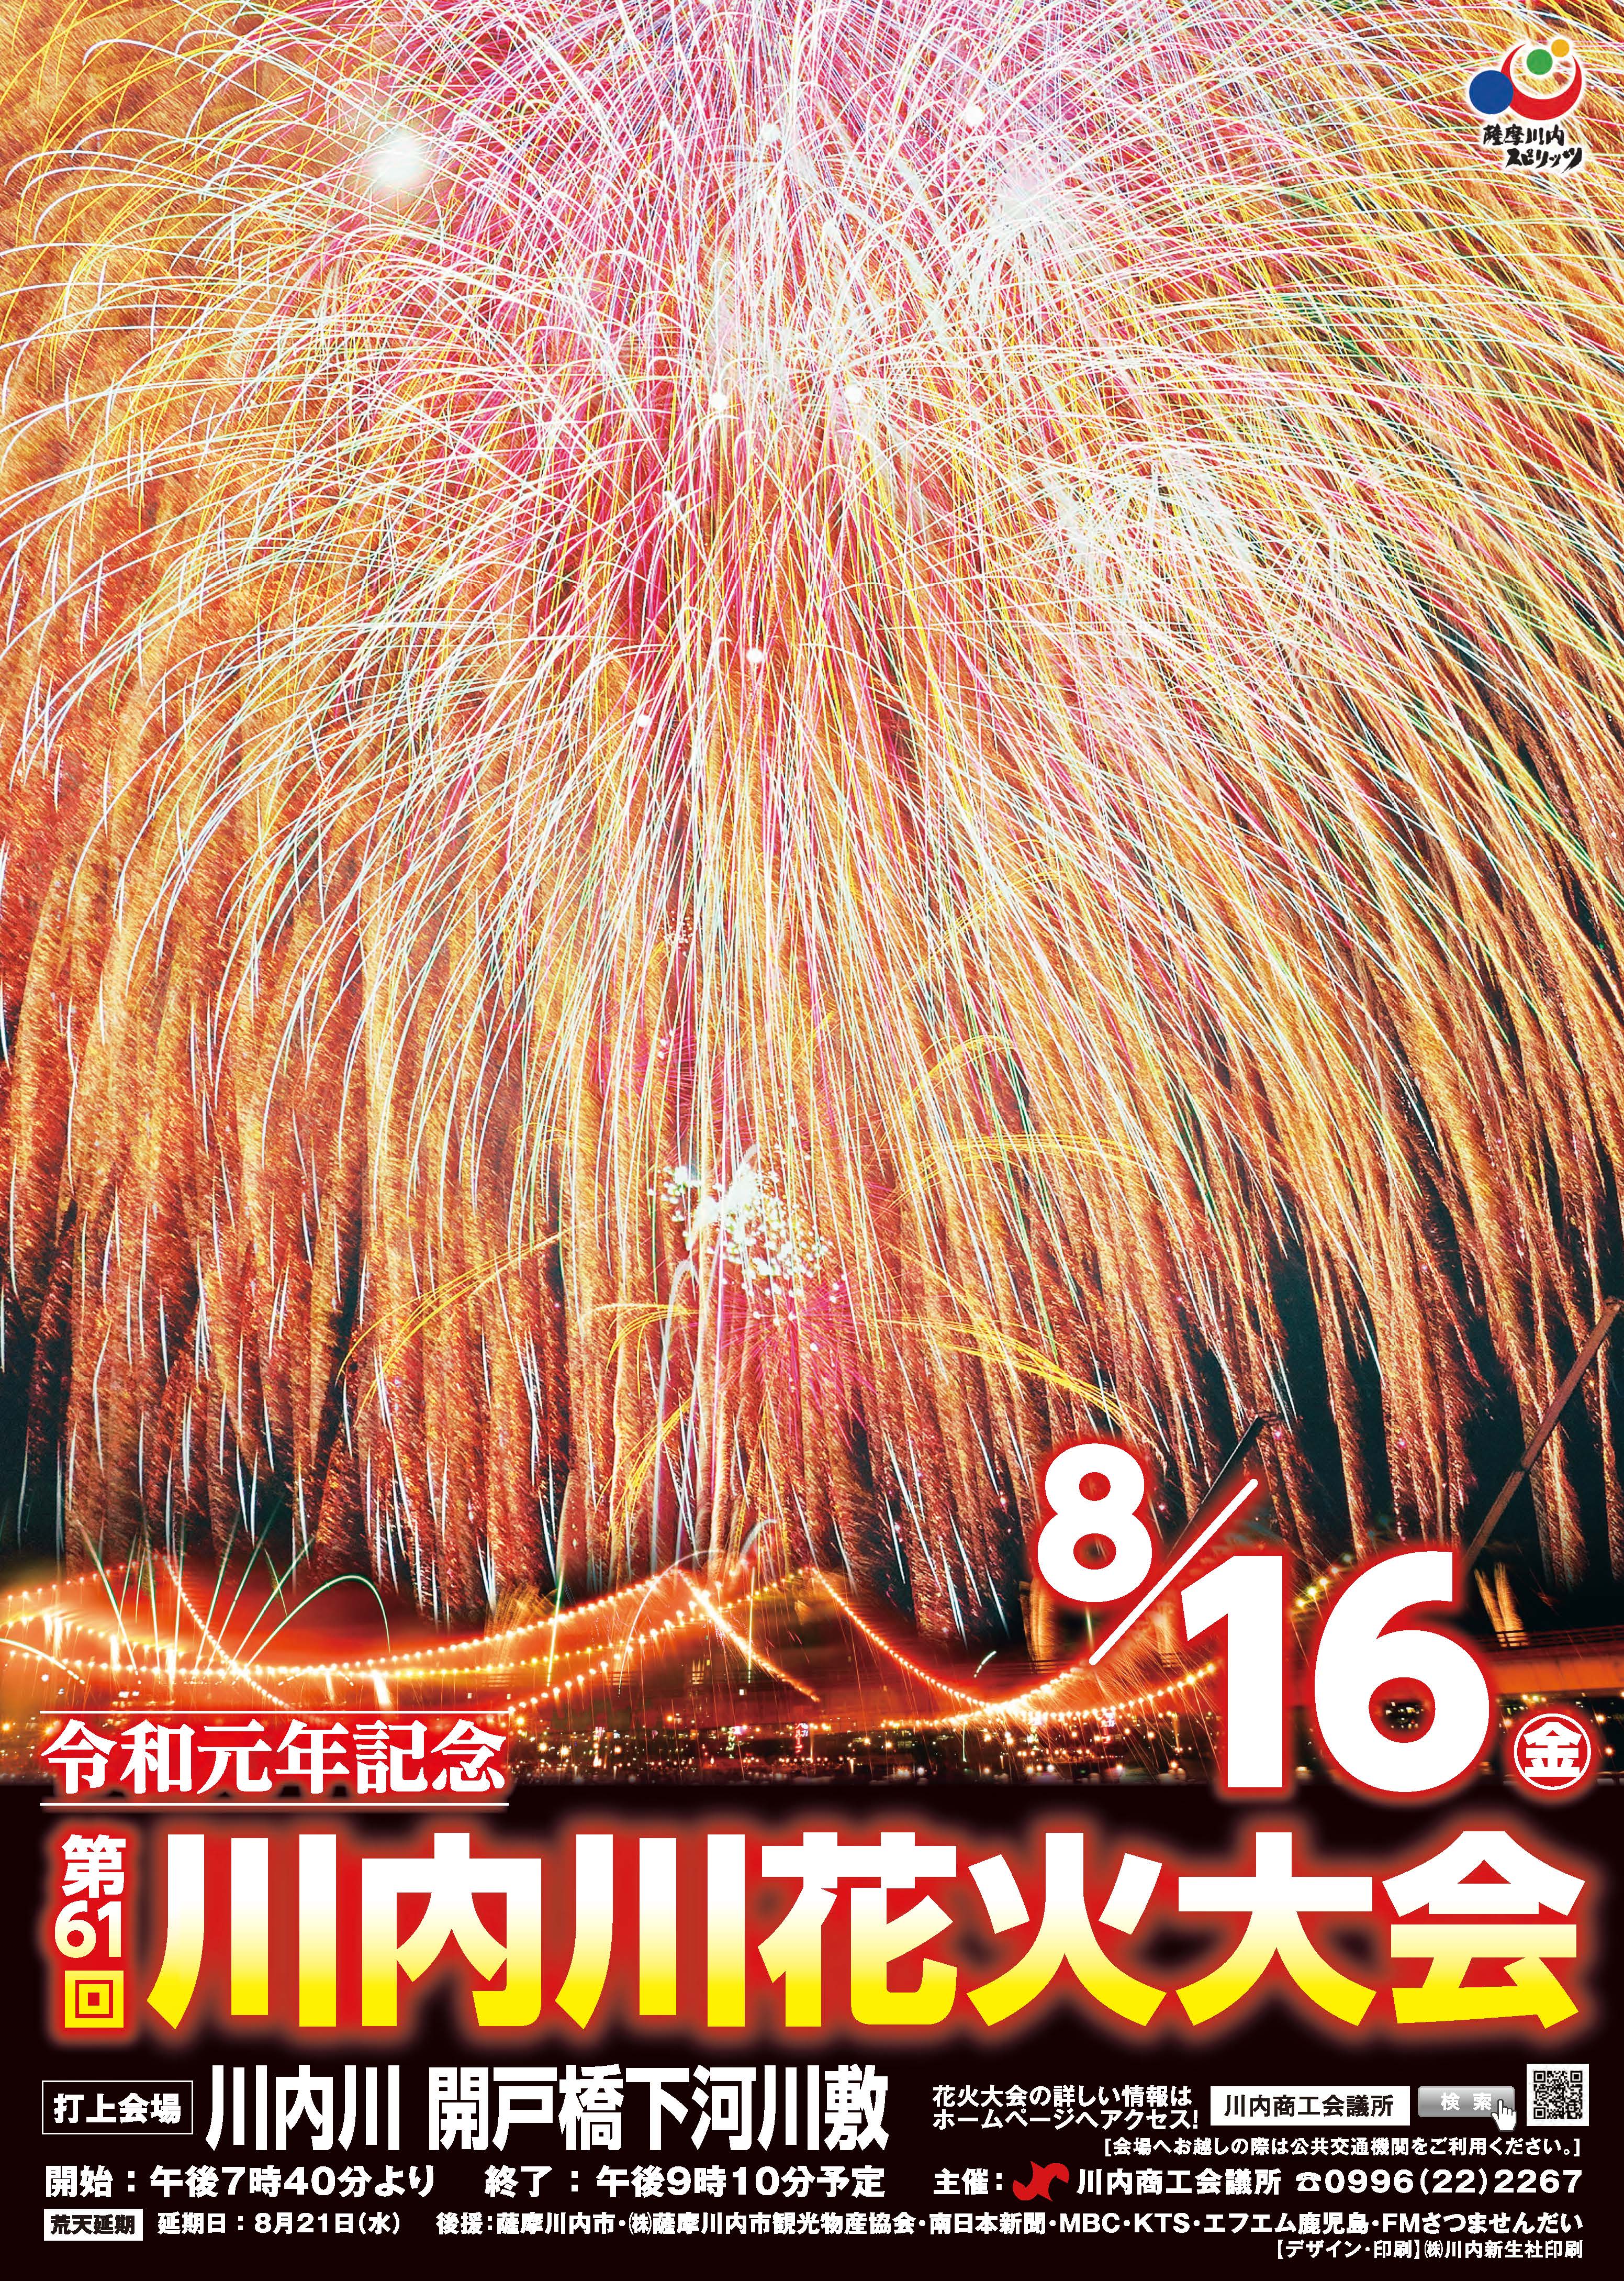 令和元年記念 第61回川内川花火大会 8月16日 木 午後2時現在 開催予定です こころ 薩摩川内観光物産ガイド